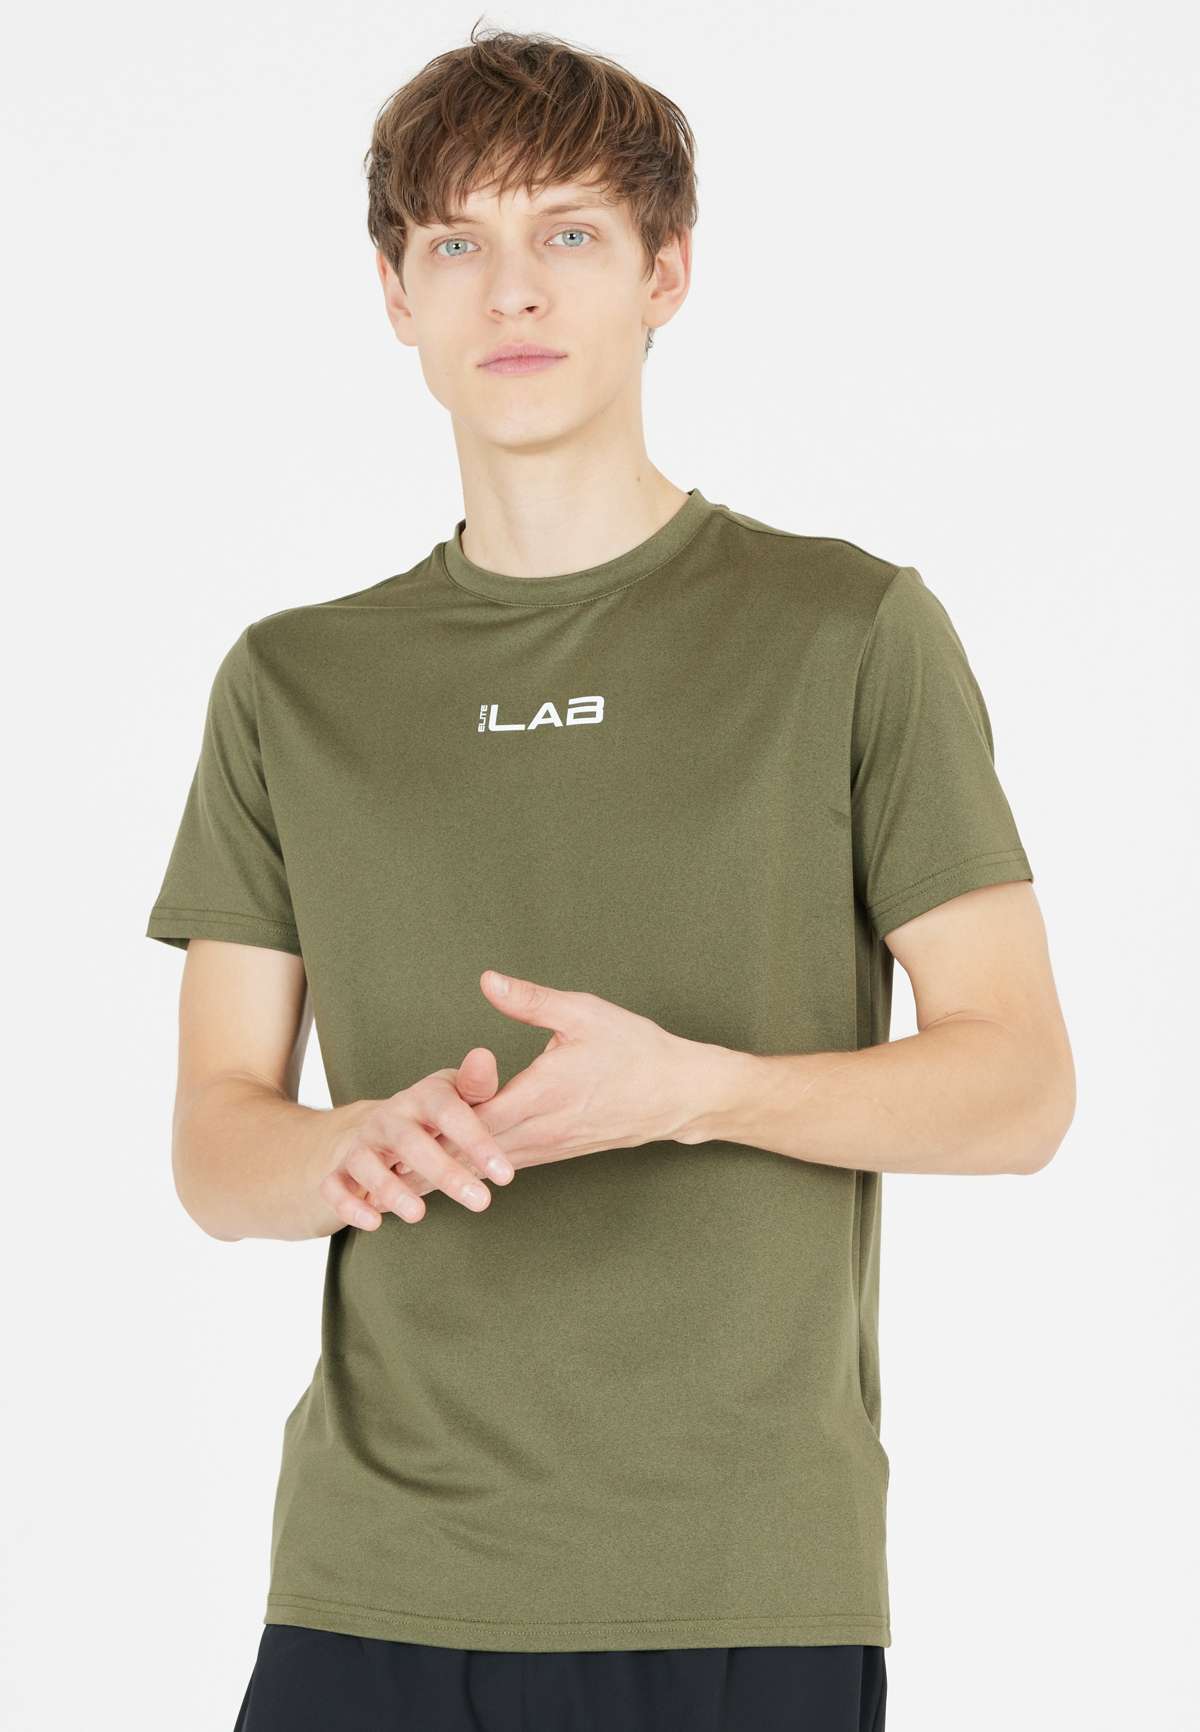 Функциональная рубашка с технологией Quick Dry.